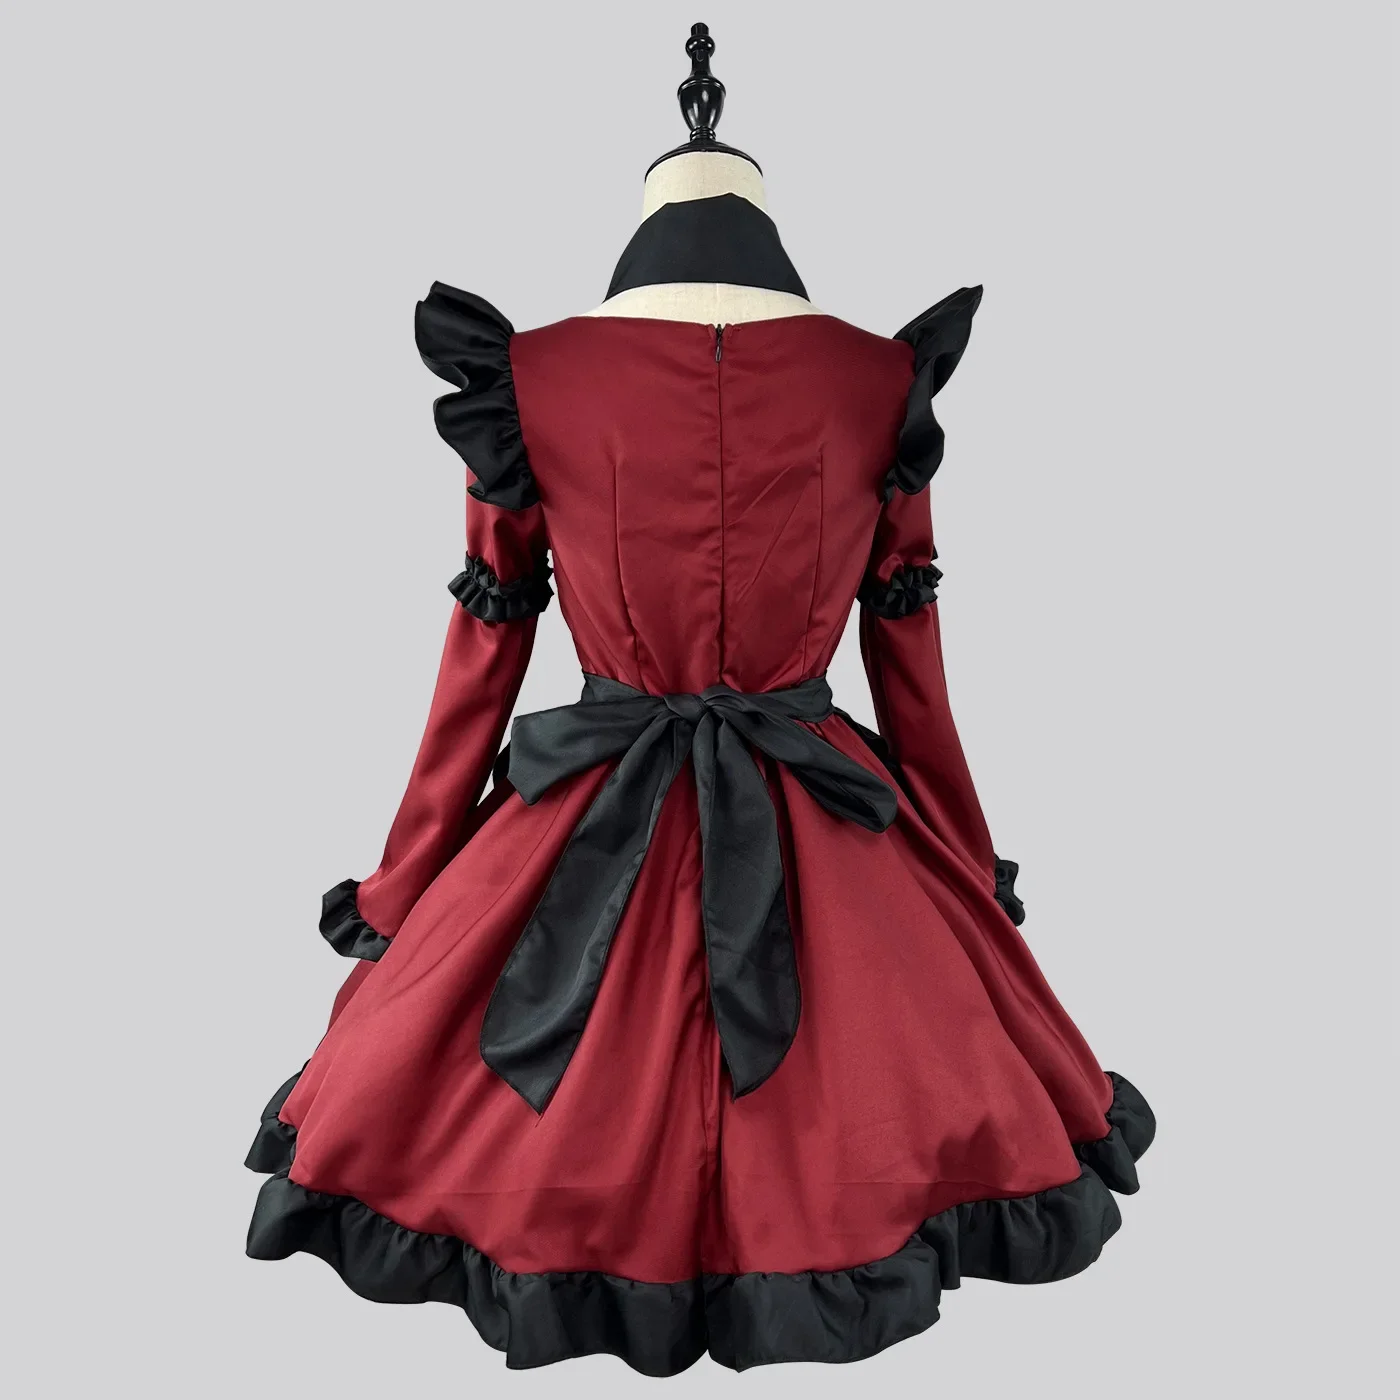 女の子のためのゴシックロリータメイドドレス、小さな悪魔のようなアニメのコスプレコスチューム、赤いドレス、流行のパーティーコスチューム、sから5xl